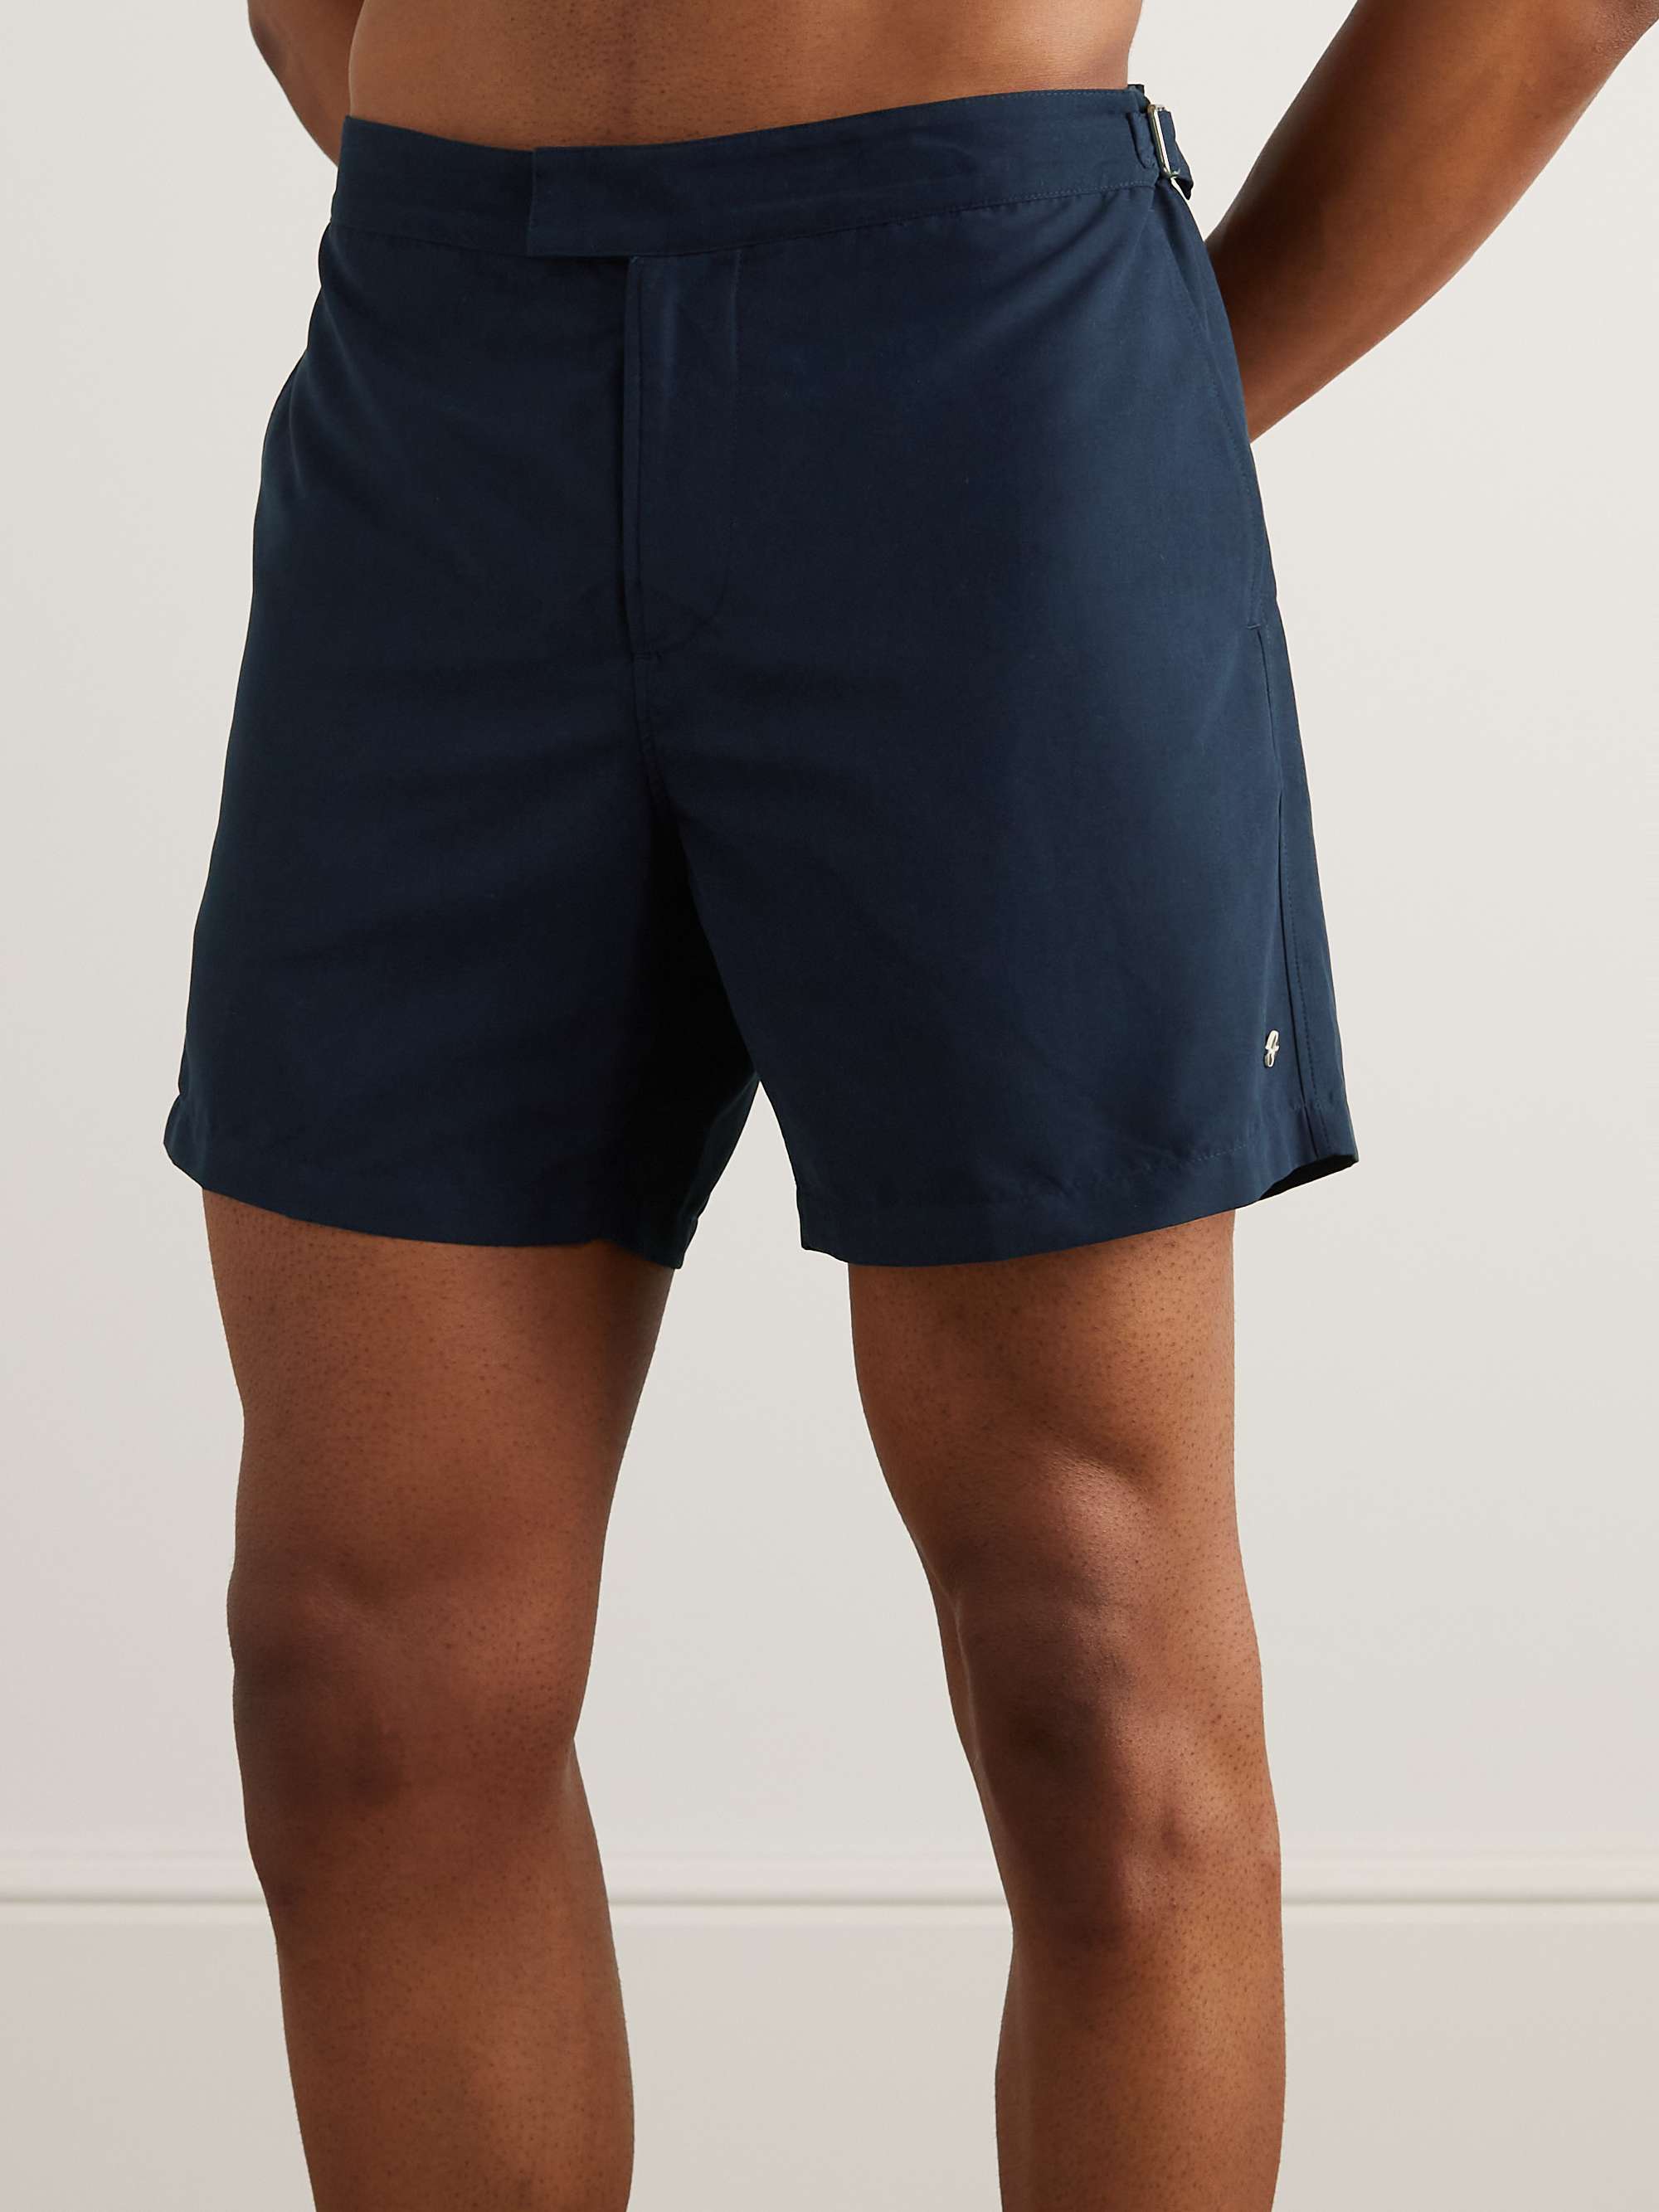 MR P. Straight-Leg Mid-Length Swim Shorts for Men